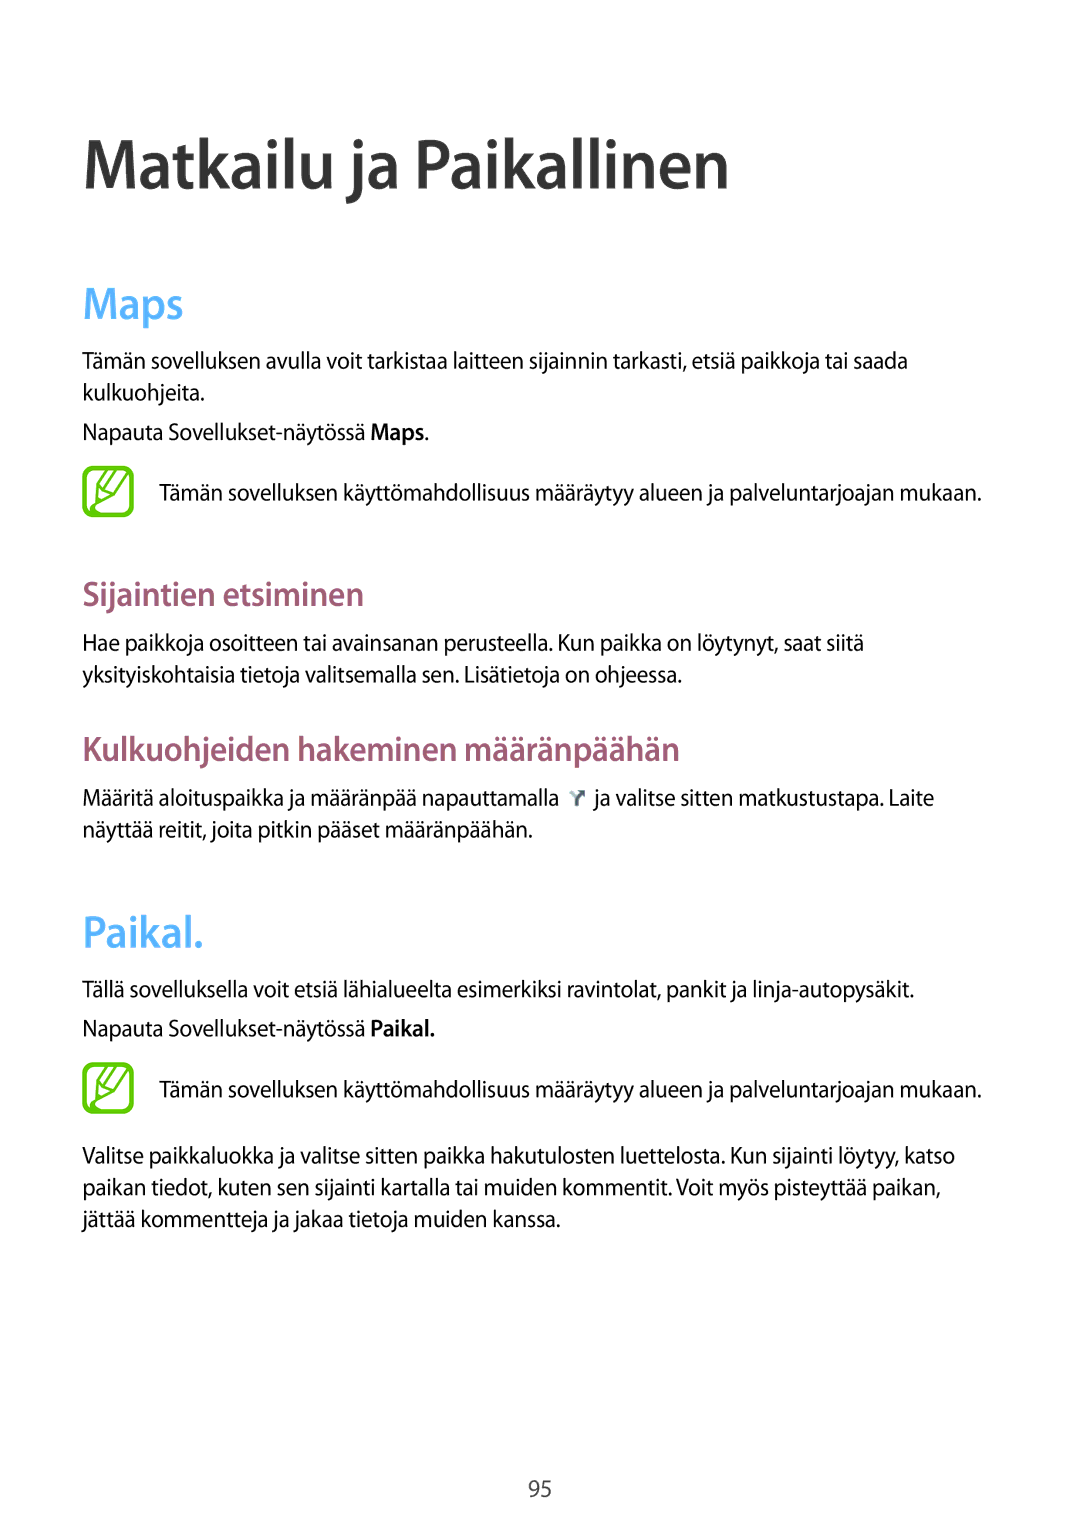 Samsung SM-G3815HKANEE manual Matkailu ja Paikallinen, Maps, Sijaintien etsiminen, Kulkuohjeiden hakeminen määränpäähän 